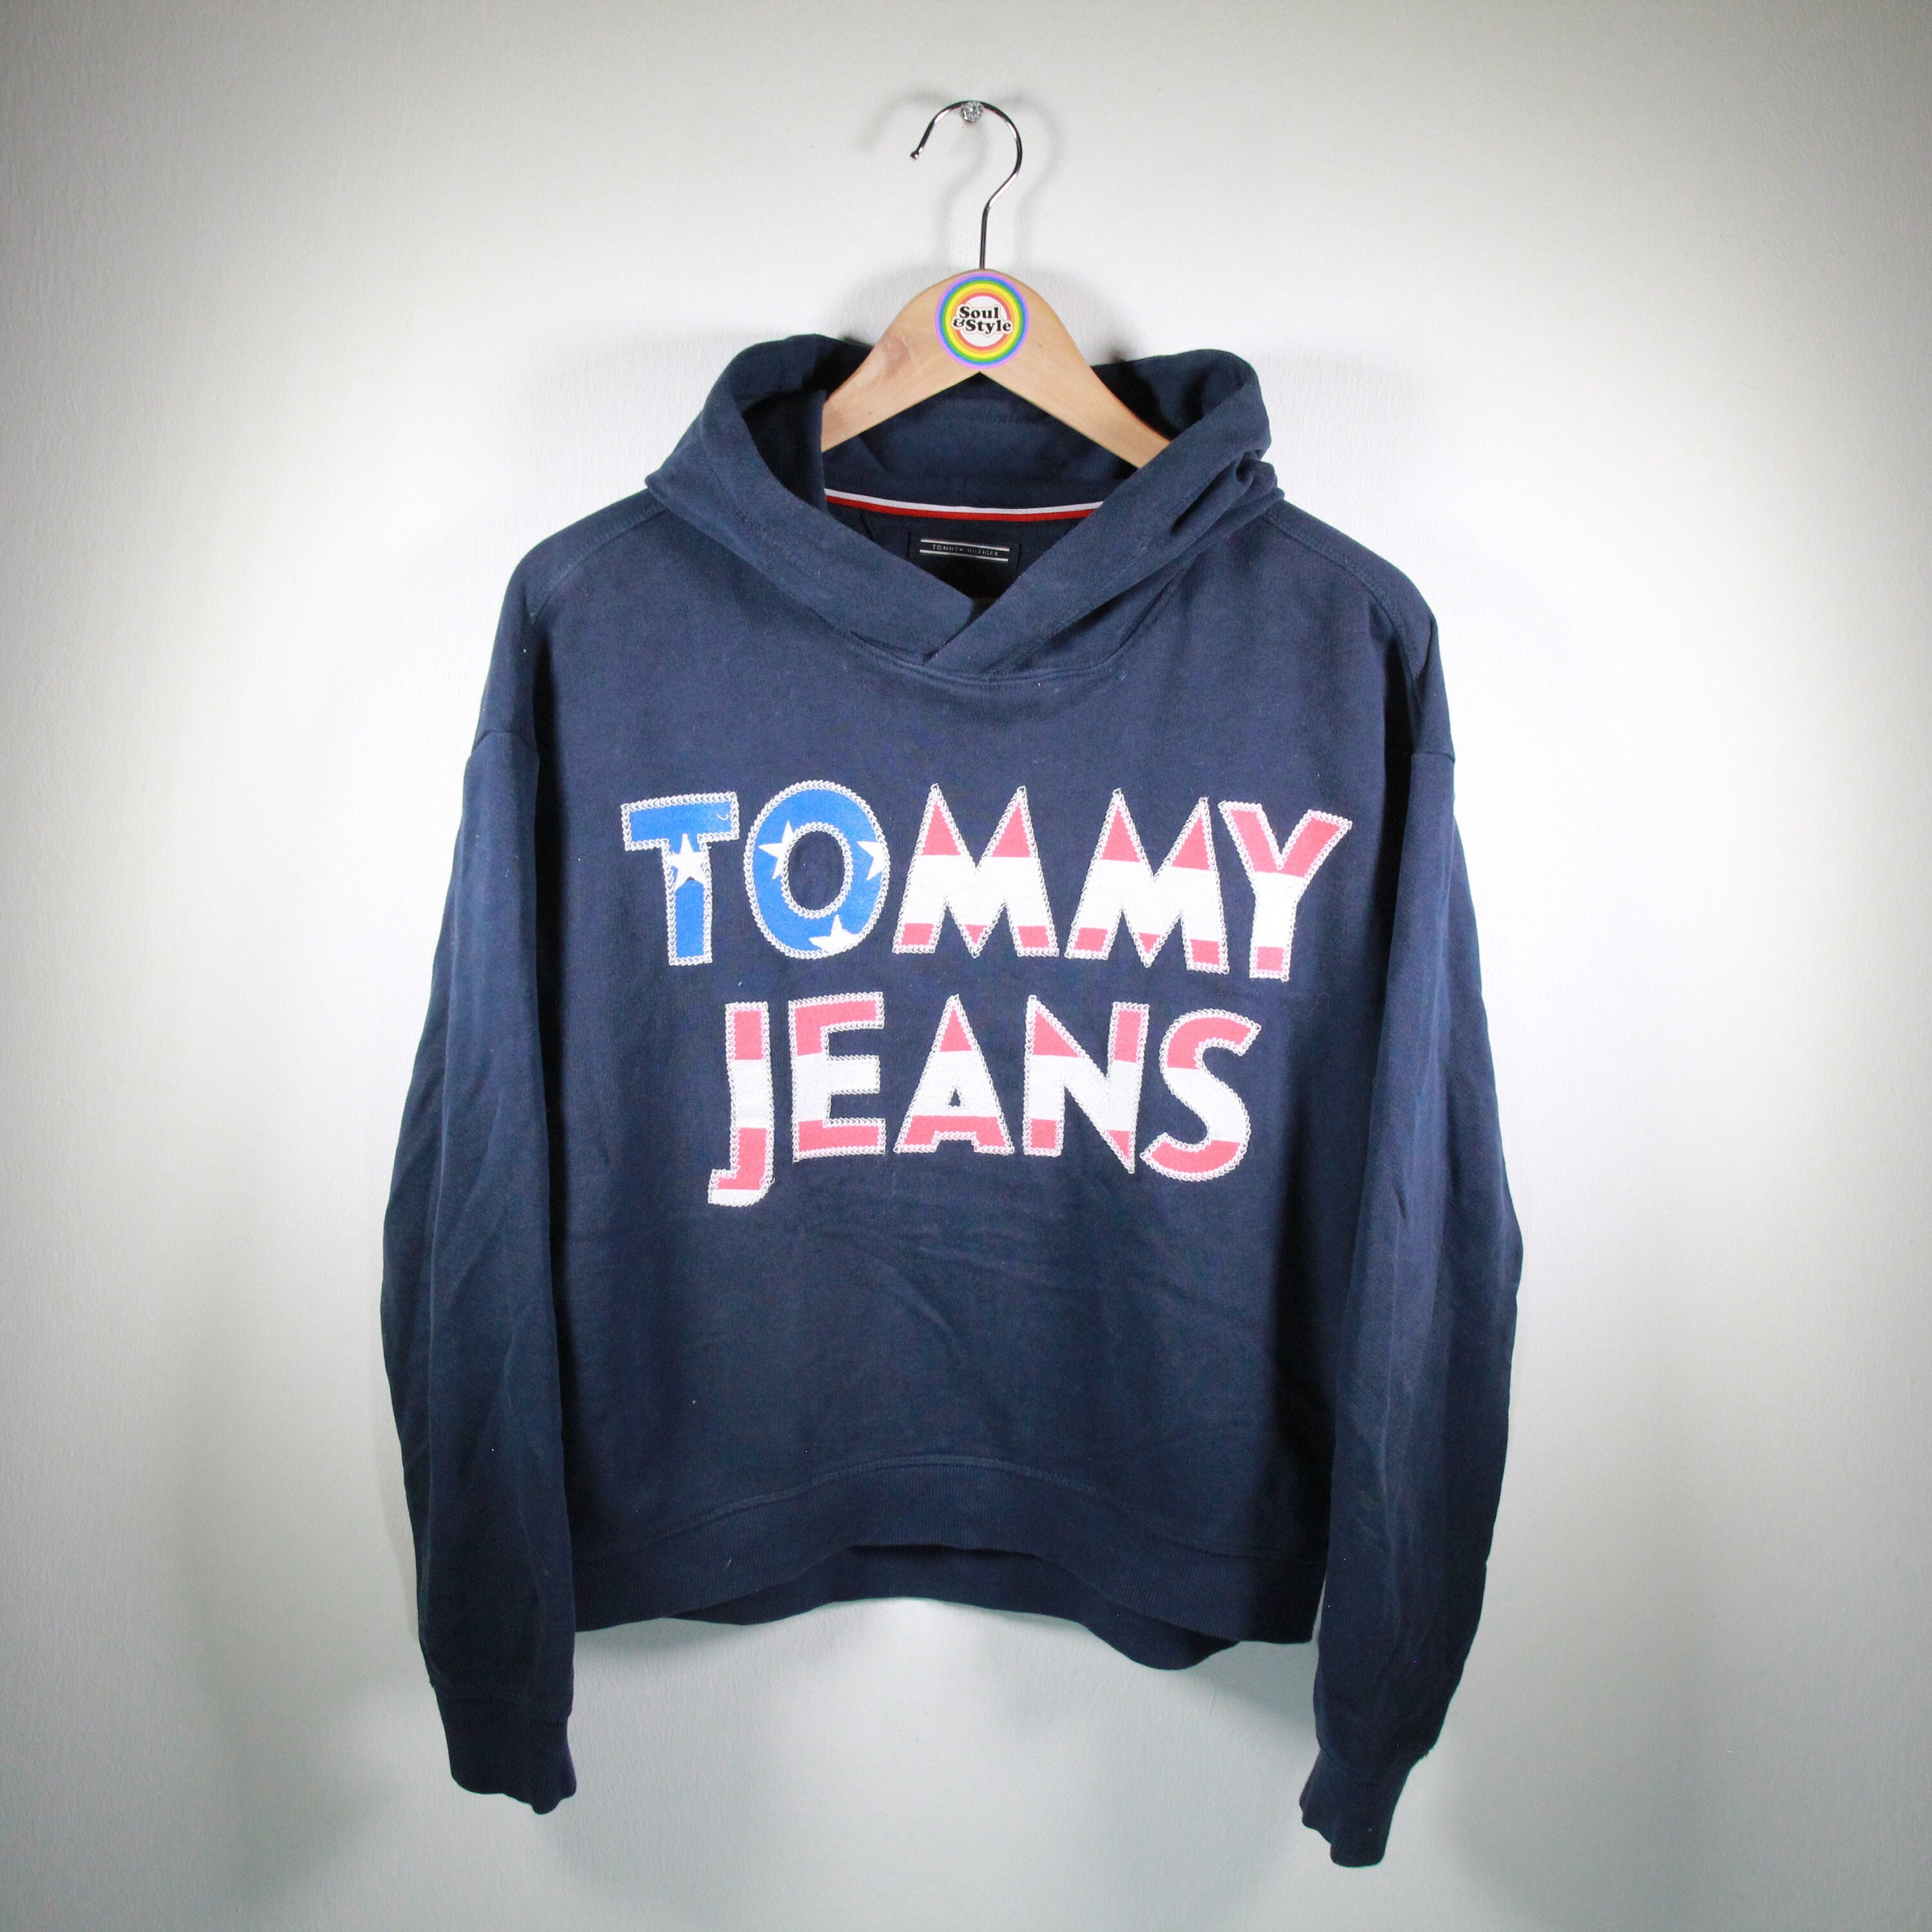 Vintage 90s Sweatshirt Hoodie S Tommy Jeans - Etsy